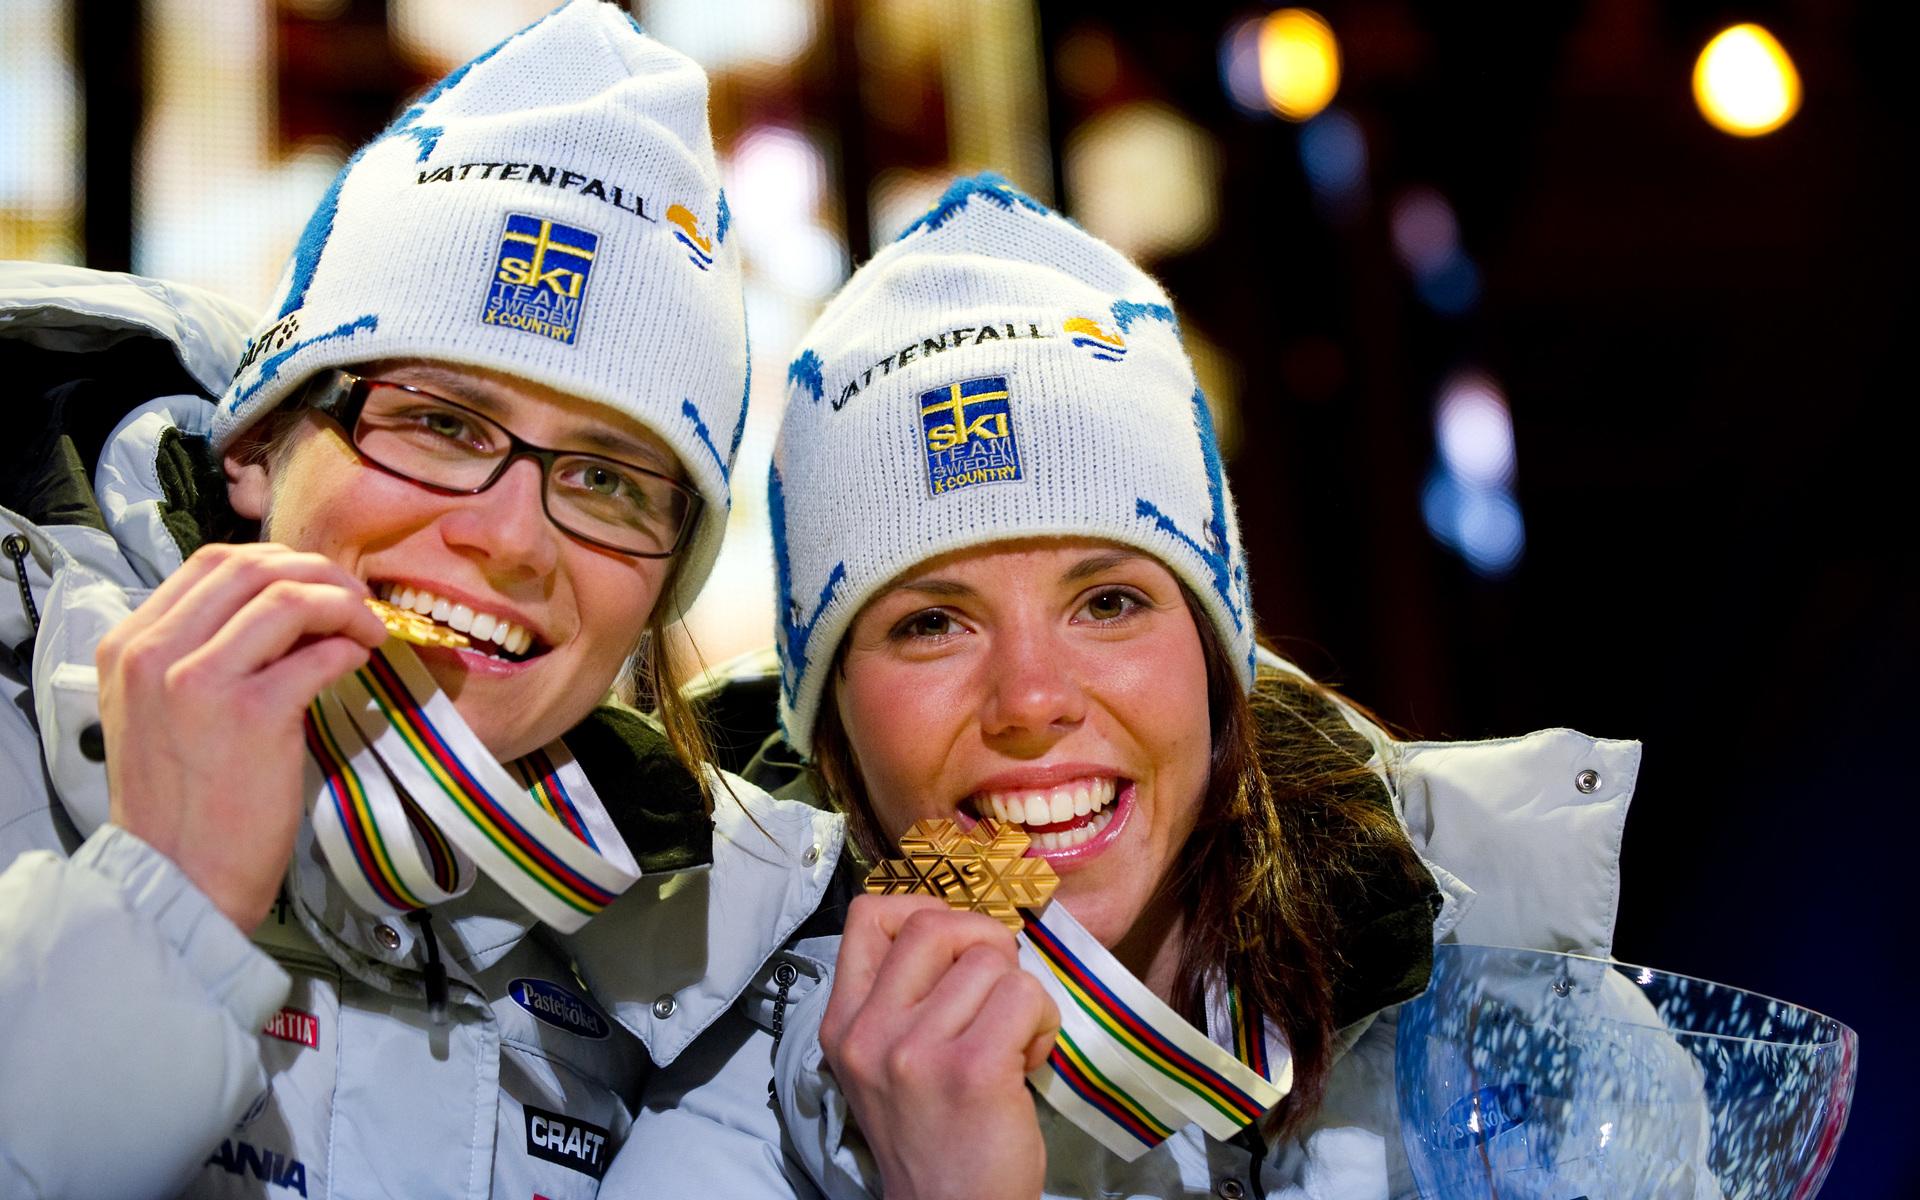 2011 tog Kalla sitt första VM-guld i seniorsammanhang. Tillsammans med Ida Ingemarsdotter vann hon sprintstafetten i Holmenkollen. 